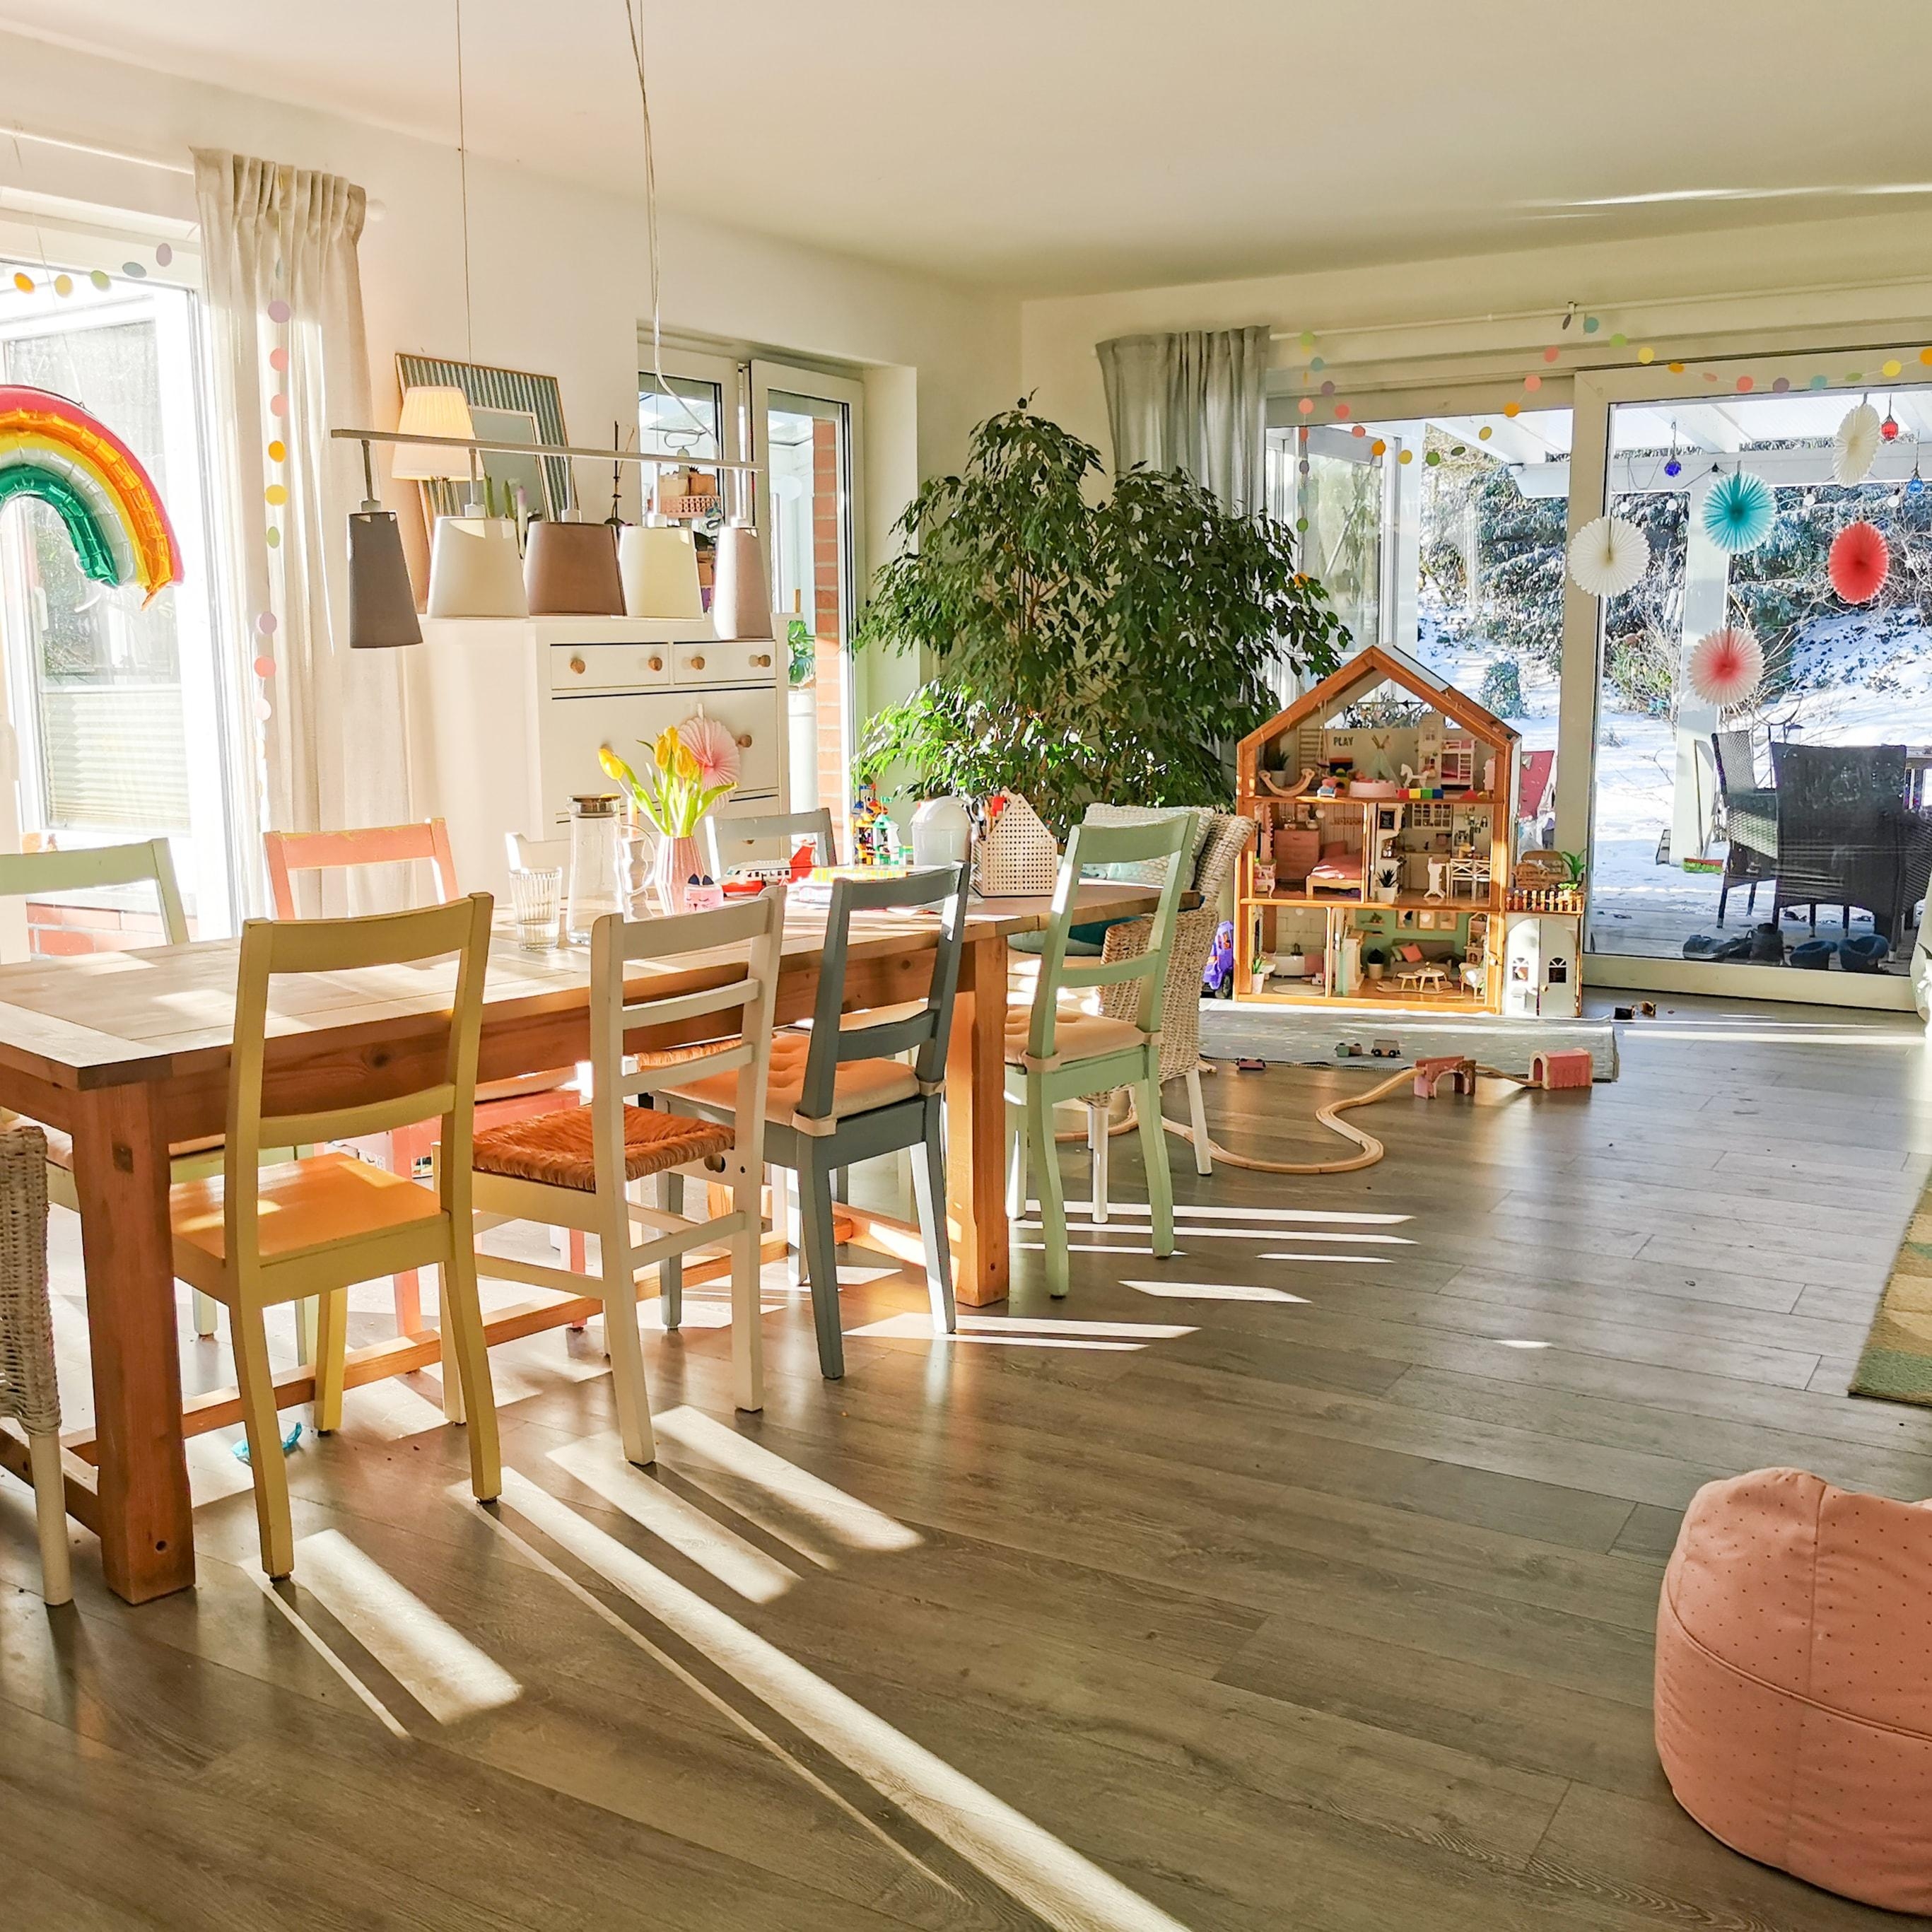 Willkommen in der Villa Kunterpastell #bunt #stilmix #pastell #colourfulliving #esszimmer #wohnzimmer #livingroom